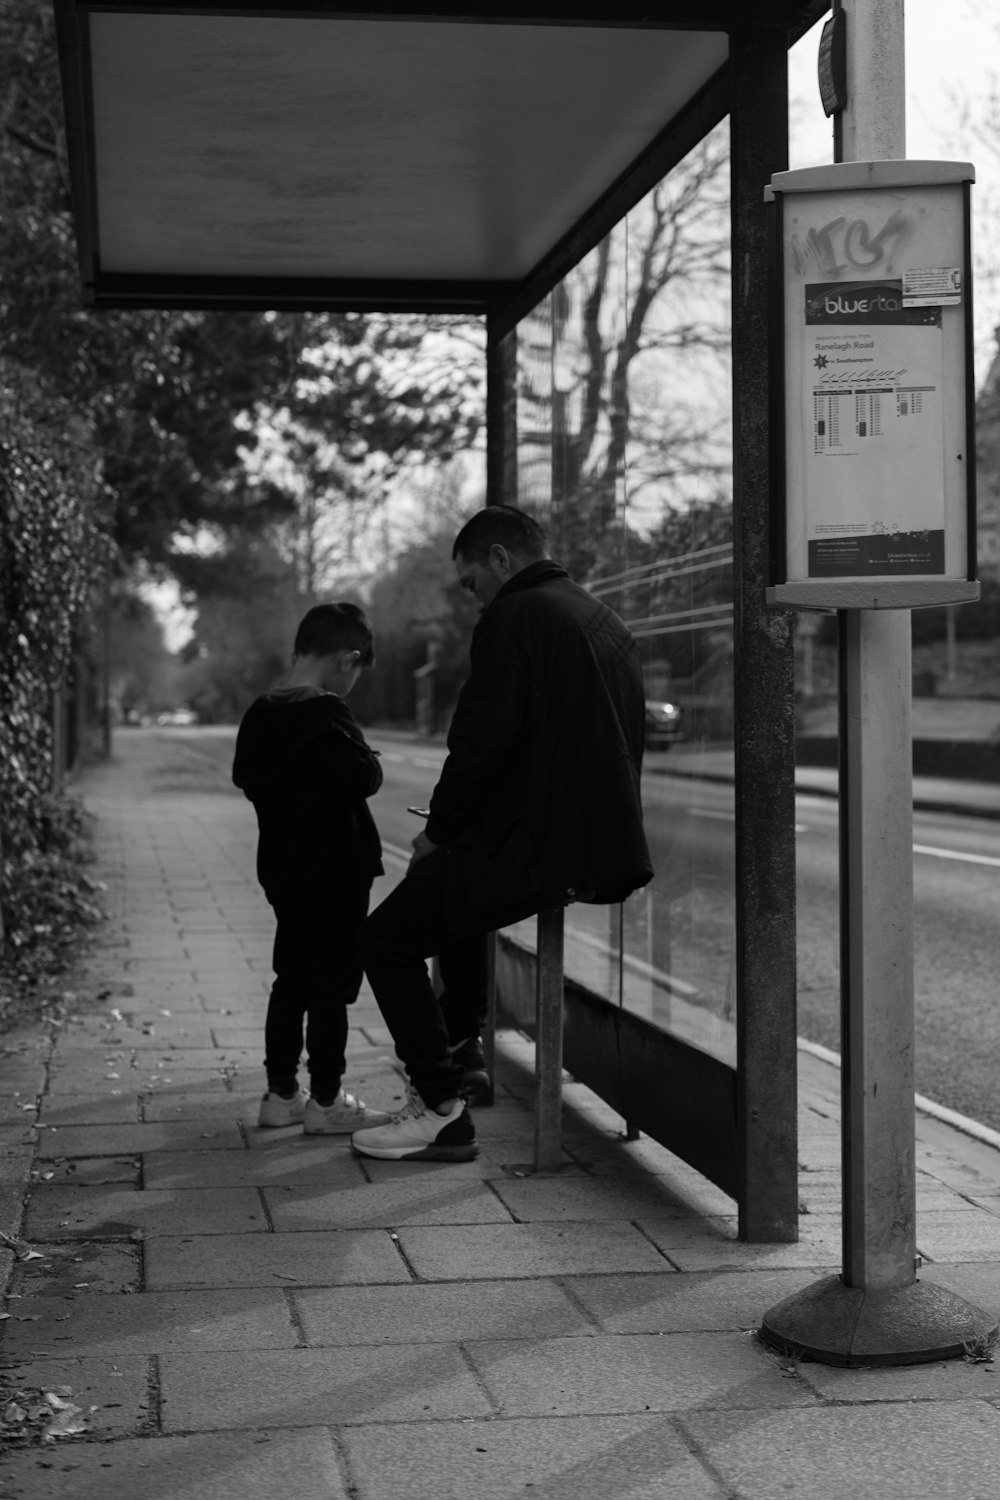 a man standing next to a little boy near a bus stop